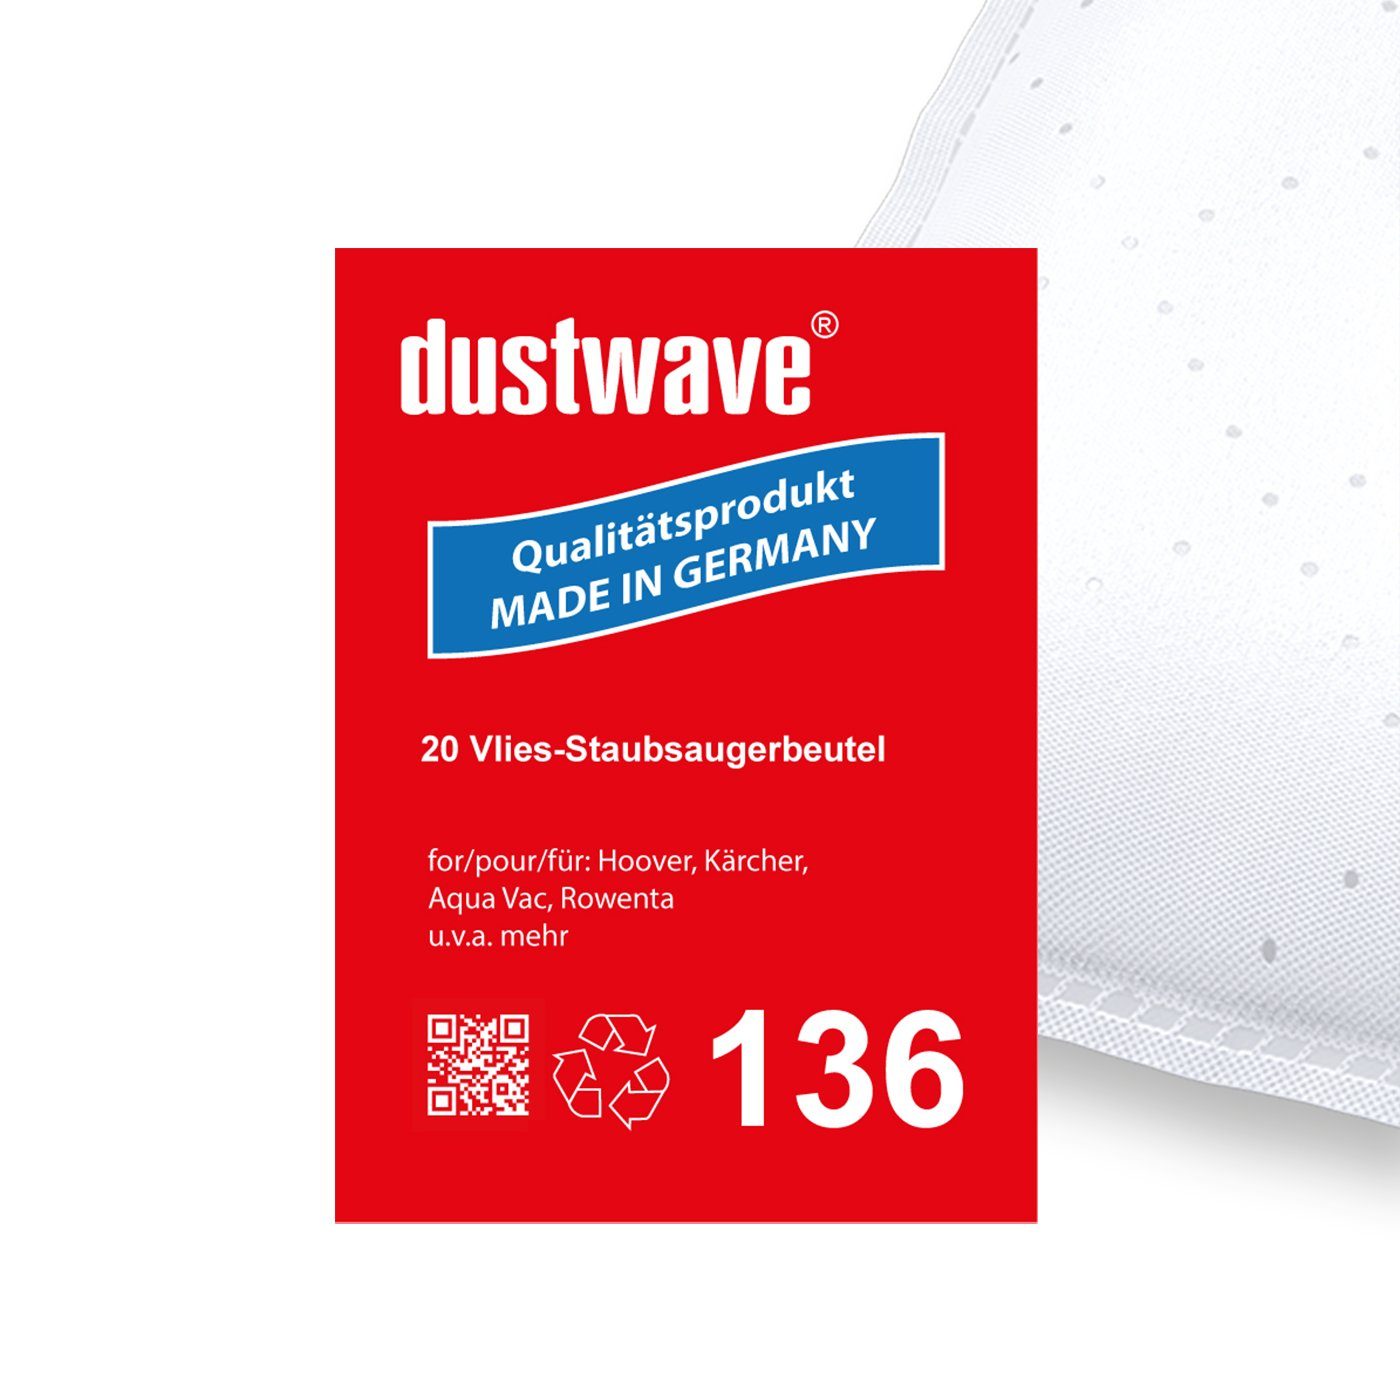 Dustwave Staubsaugerbeutel Megapack, passend für Base BA 2585, 20 St., Megapack, 20 Staubsaugerbeutel + 2 Hepa-Filter (ca. 15x15cm - zuschneidbar)